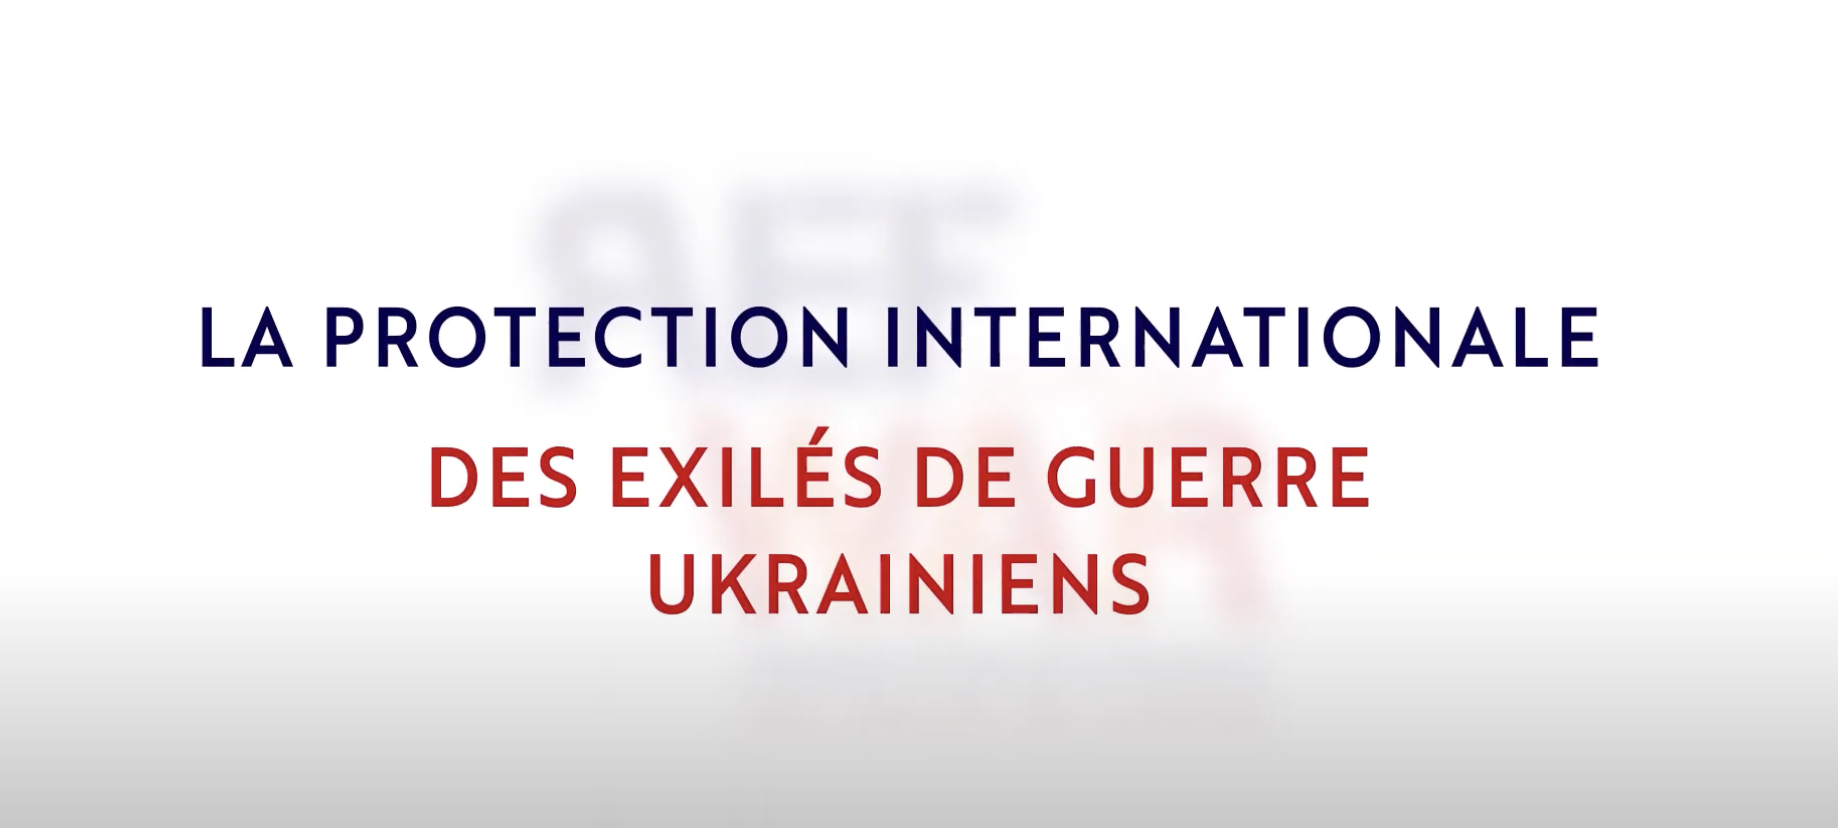 Protection des exilés de guerre ukrainiens